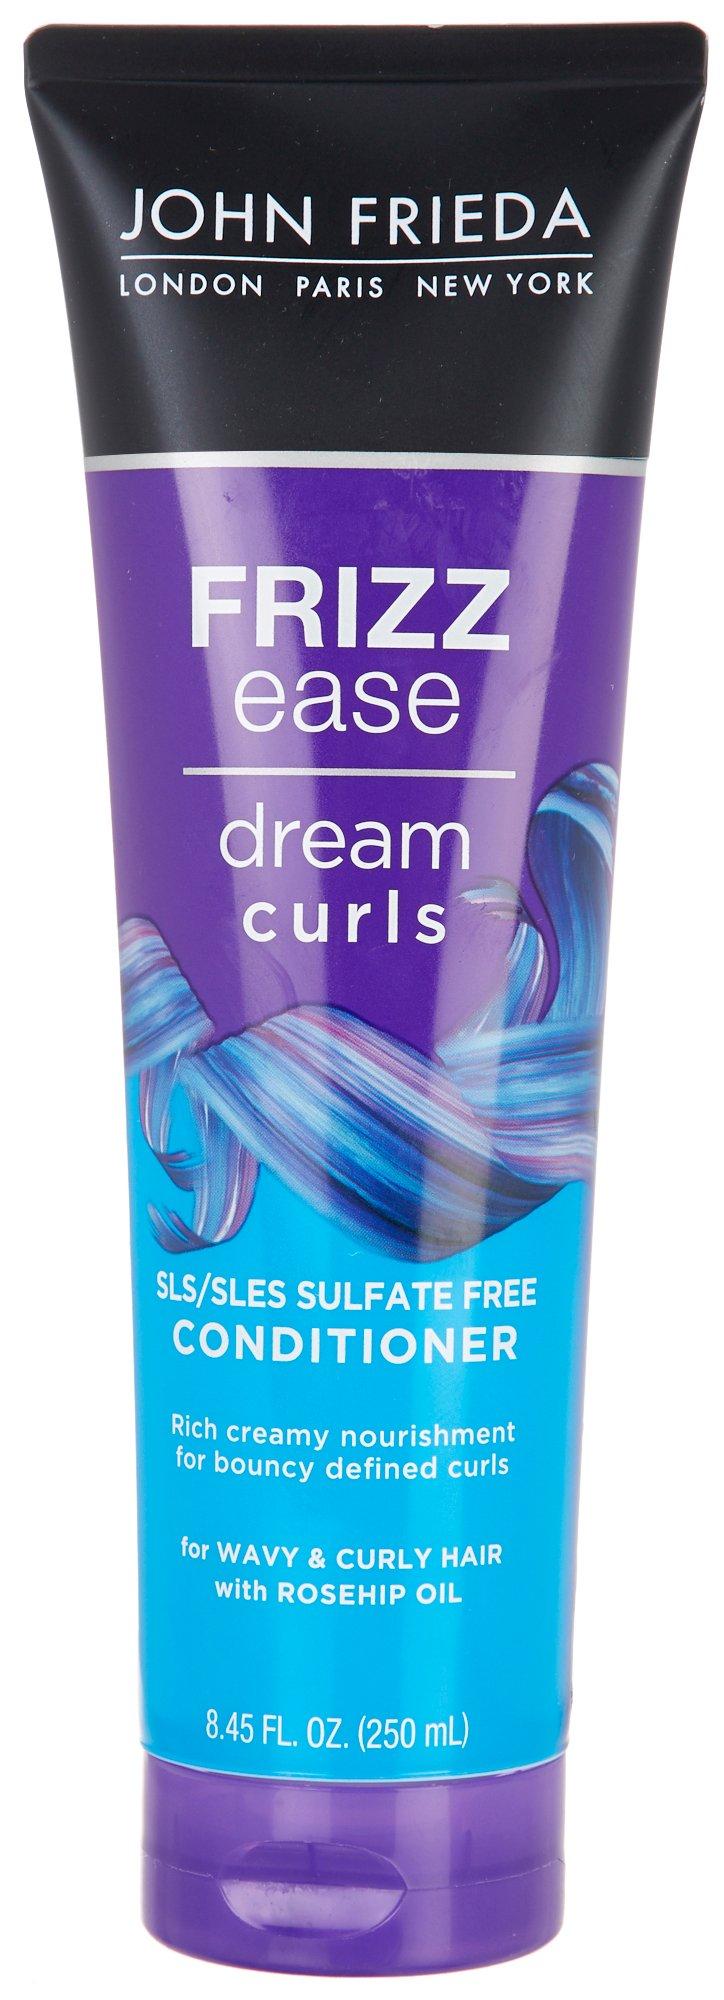 8 oz Dream Curls Sulfate Free Conditioner